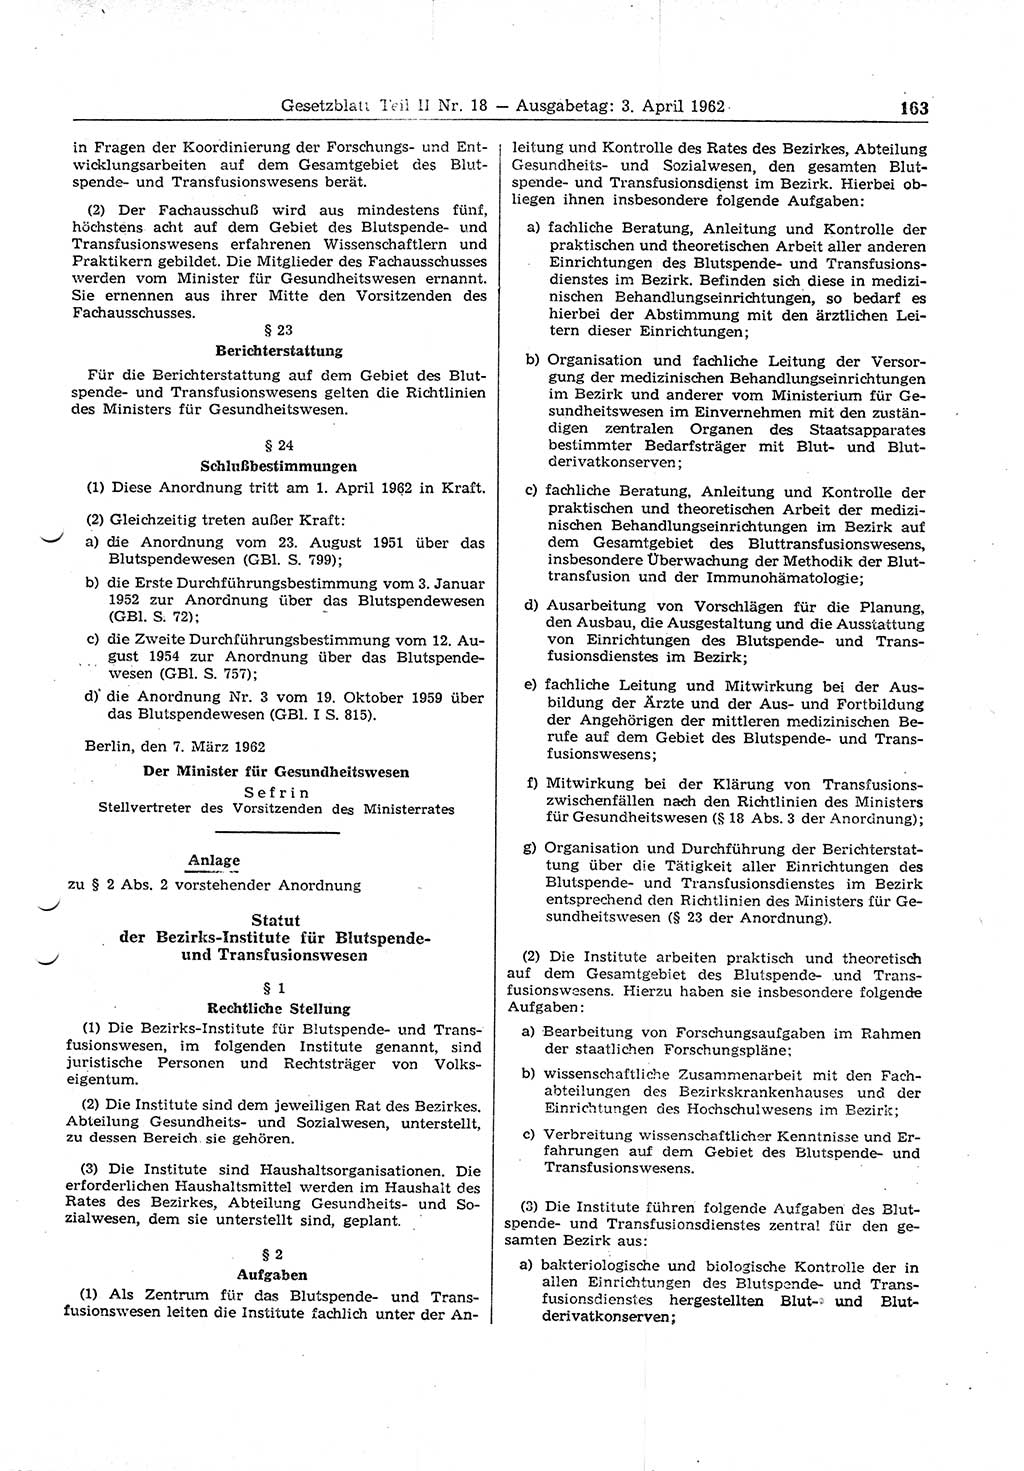 Gesetzblatt (GBl.) der Deutschen Demokratischen Republik (DDR) Teil ⅠⅠ 1962, Seite 163 (GBl. DDR ⅠⅠ 1962, S. 163)